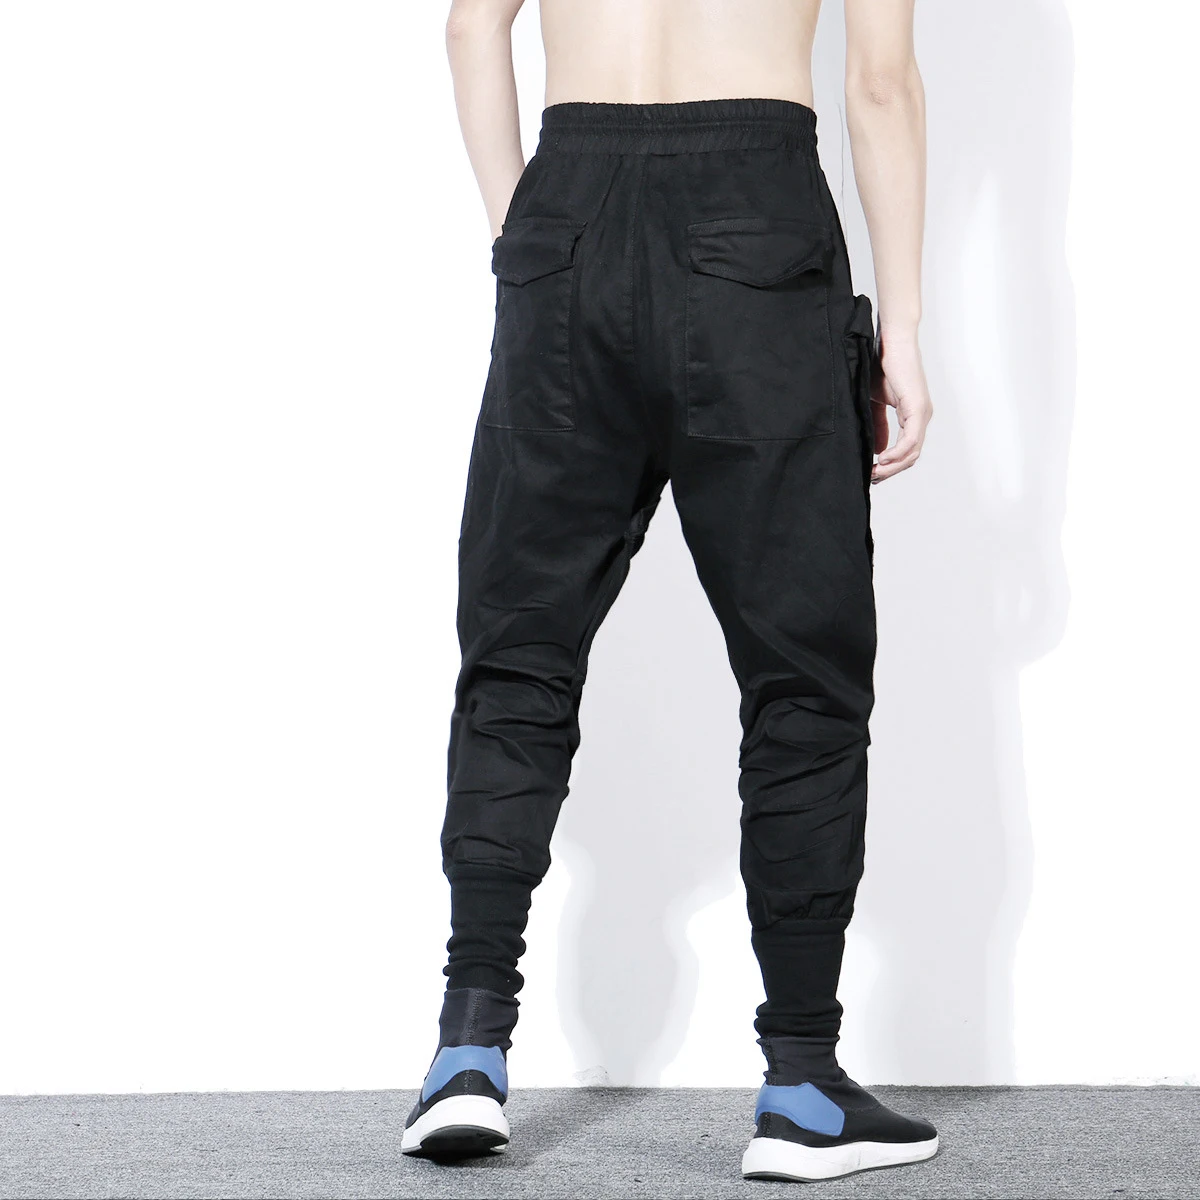 Quagmire Expert Abolished Tactic Funcționale Cargo Pantaloni Barbati Hip Hop Streetwear Elastic Talie Pantaloni  Joggers Neregulate Multi-pocket Pant Black Wb520 cumpara online -  Îmbrăcăminte Pentru Bărbați ~ www.adac-romania.ro